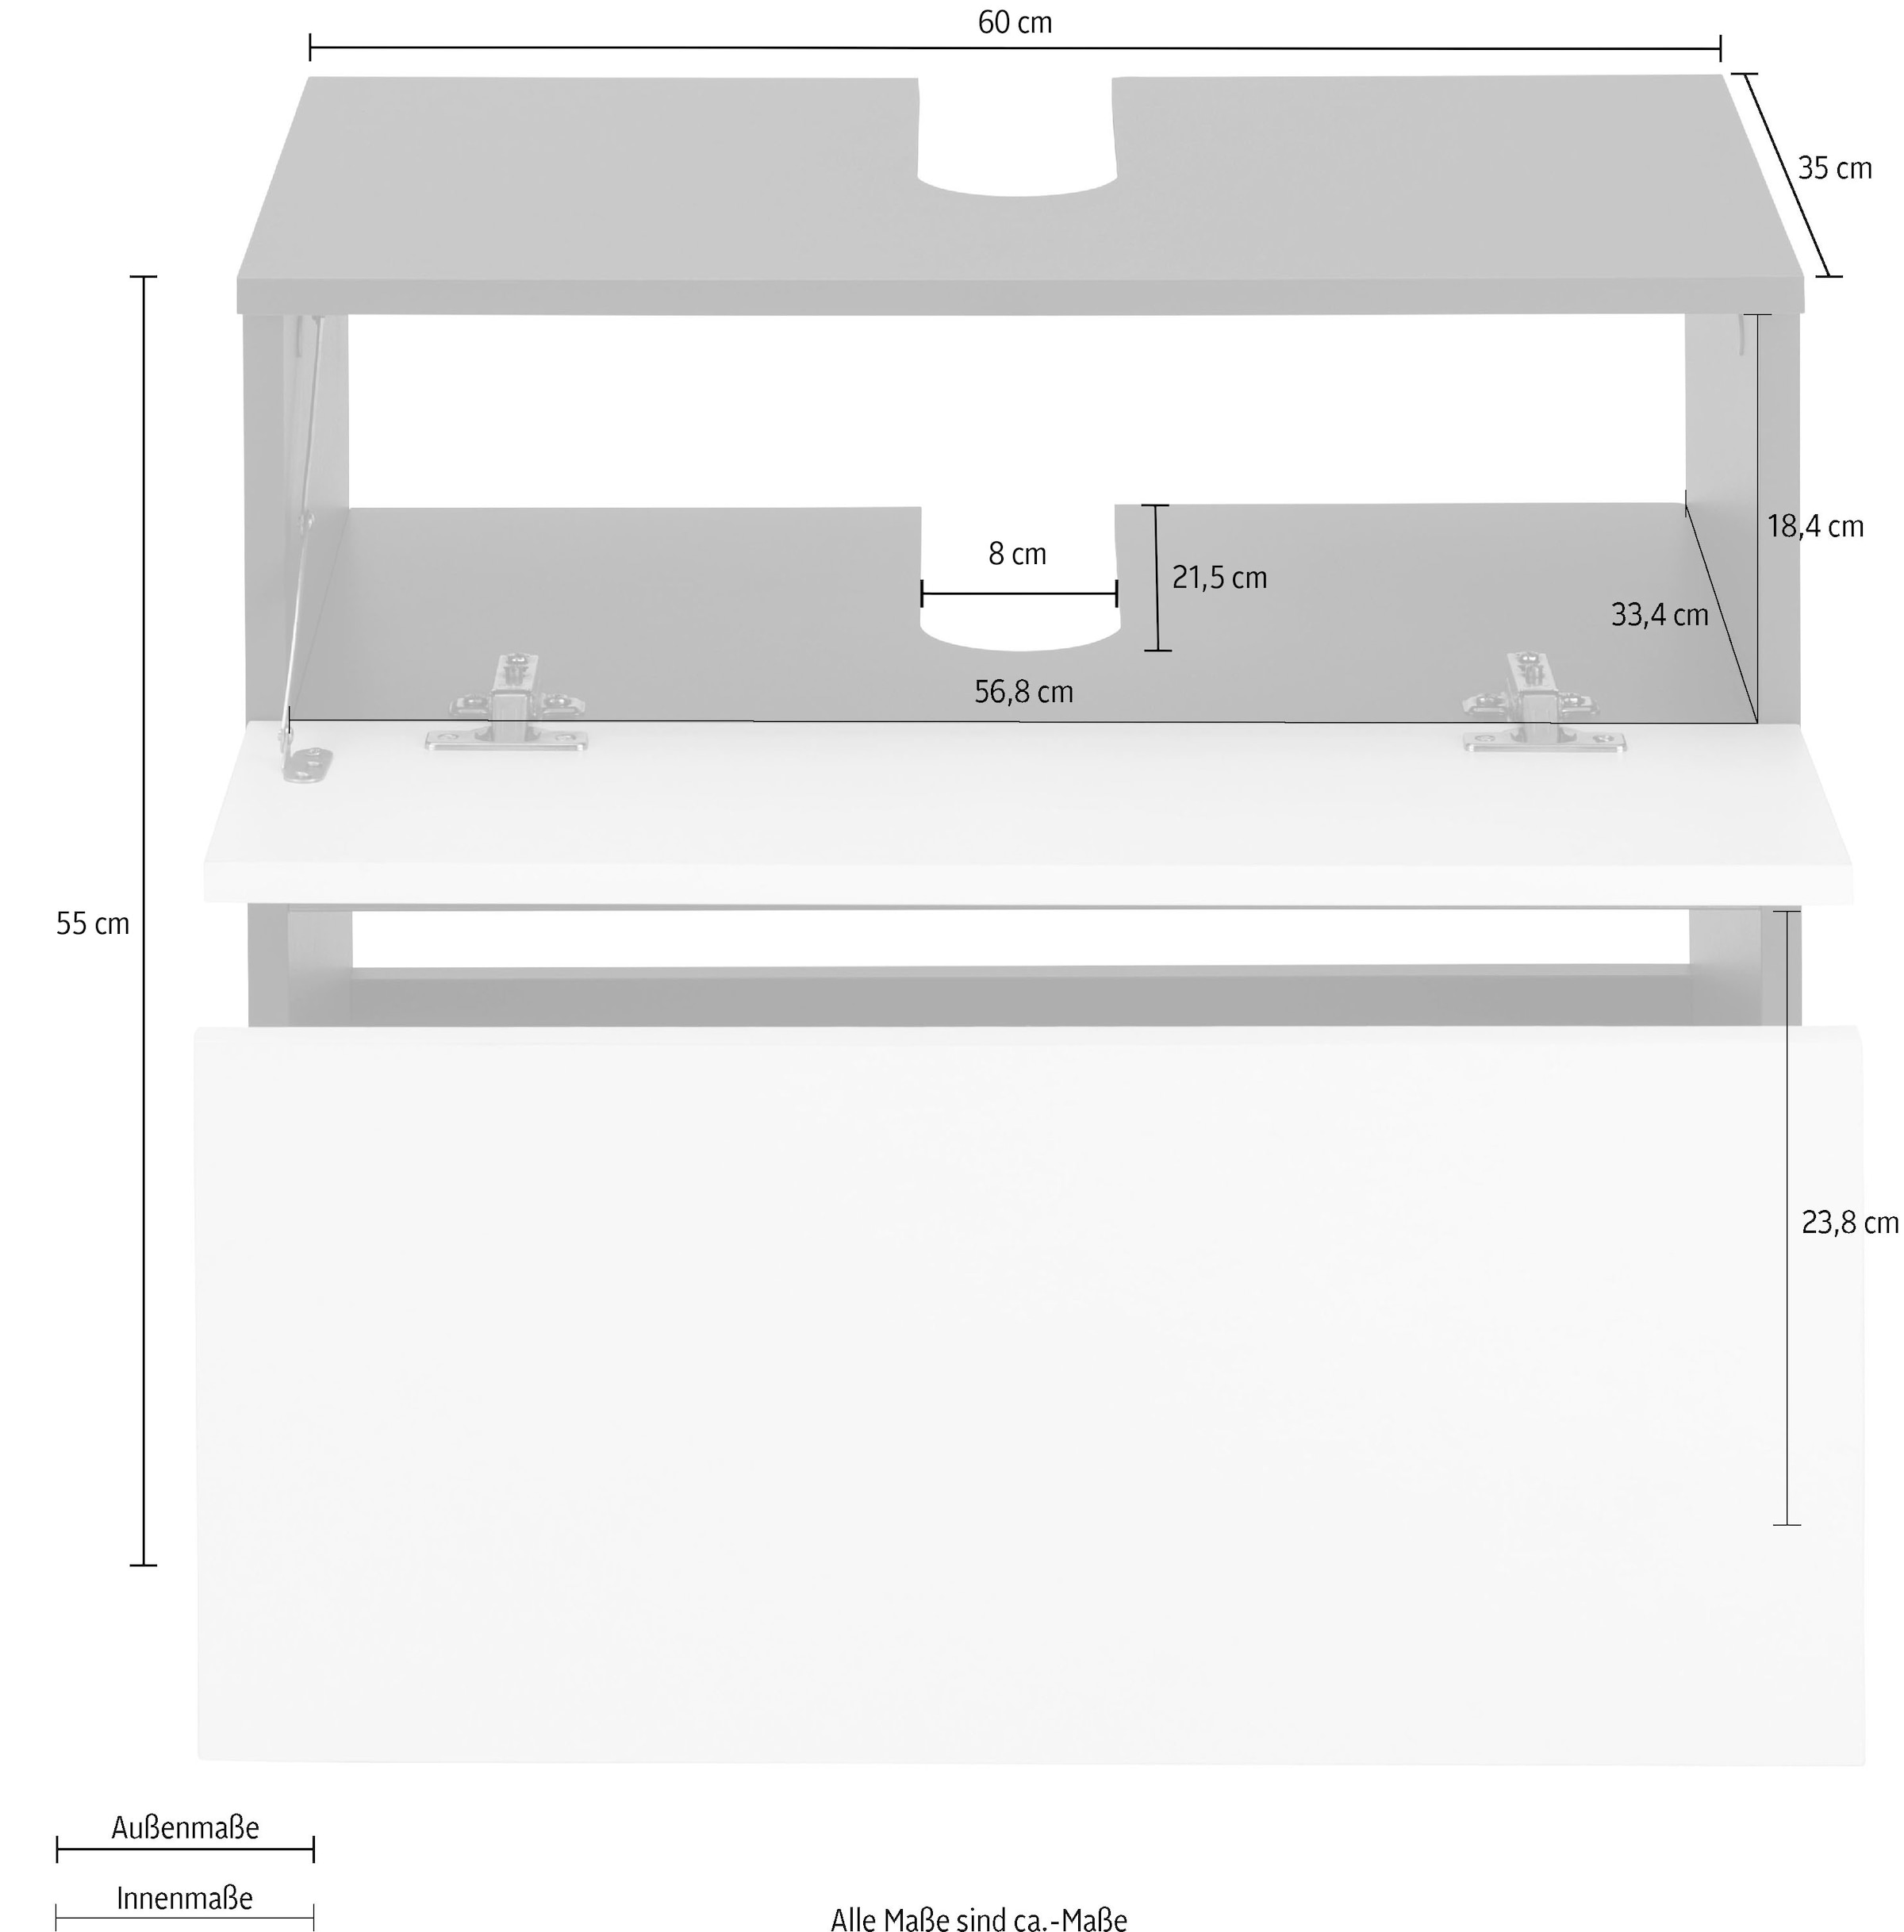 Home affaire Waschbeckenunterschrank »Wisla«, Siphonausschnitt, Push-to-open-Funktion, Breite 60cm, Höhe 55 cm